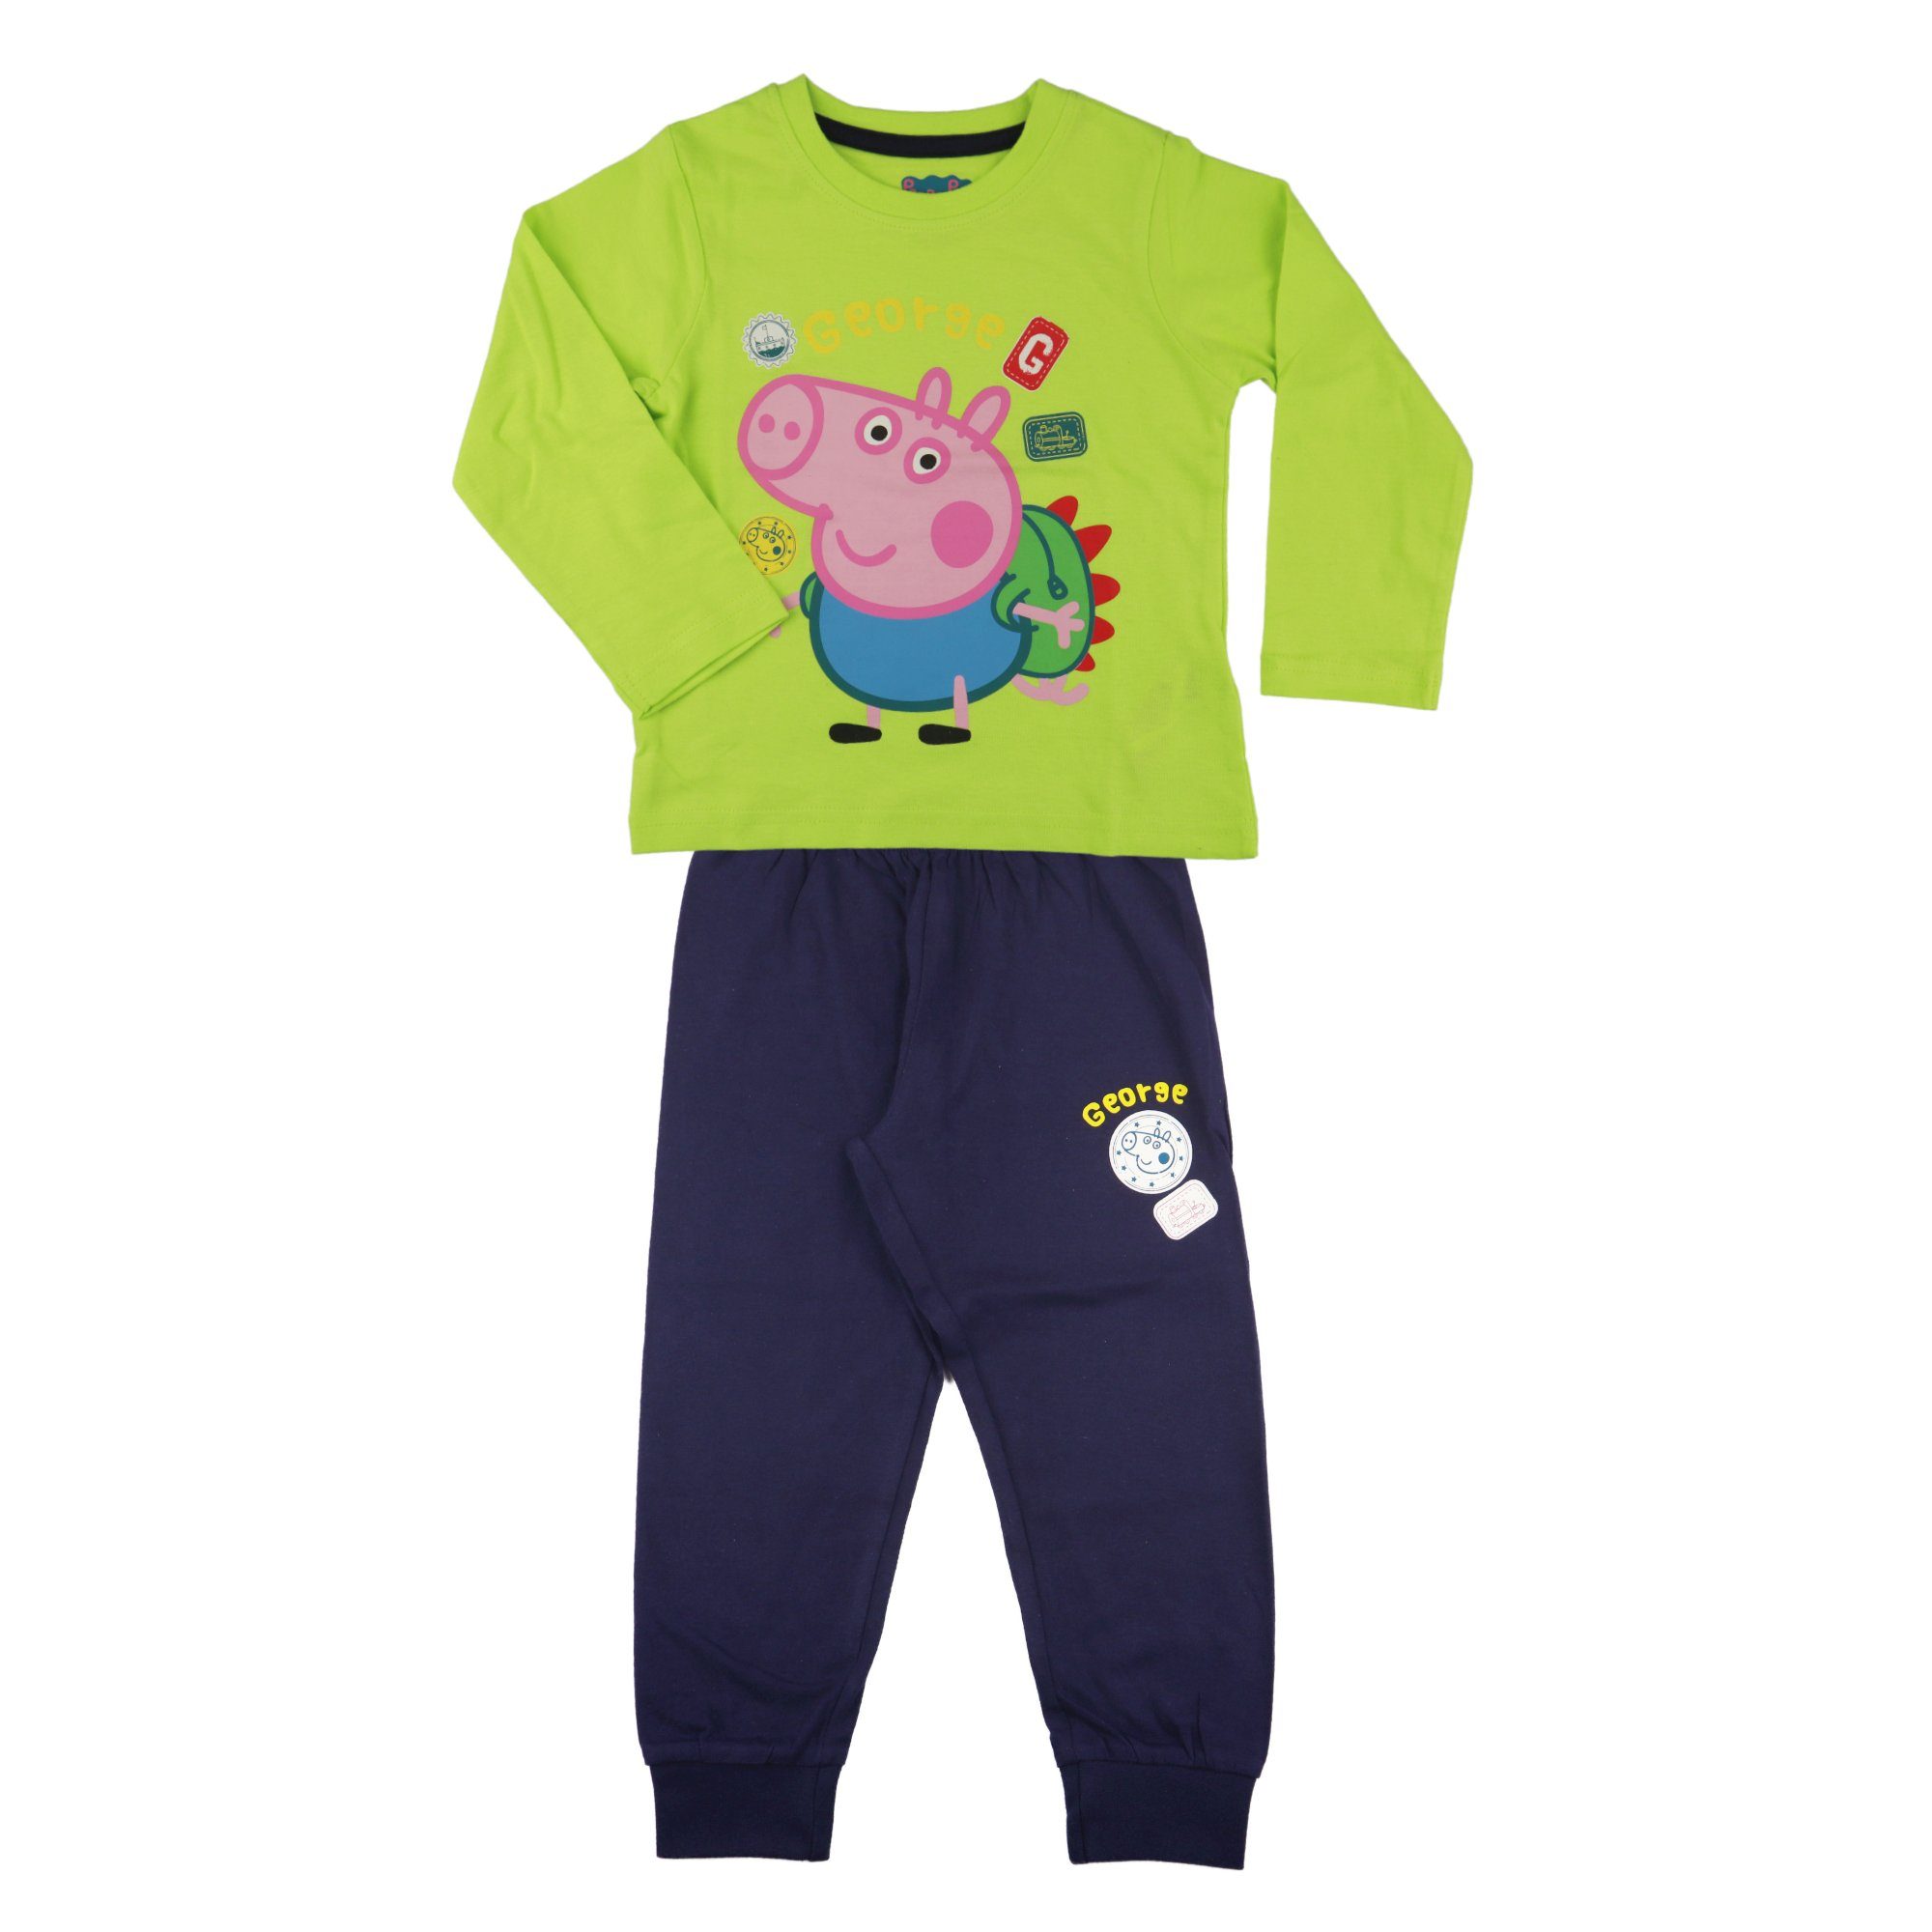 Peppa Pig Schlafanzug Peppa Wutz George Jungen Kinder Pyjama Gr. 92 bis 116, 100% Baumwolle Grün